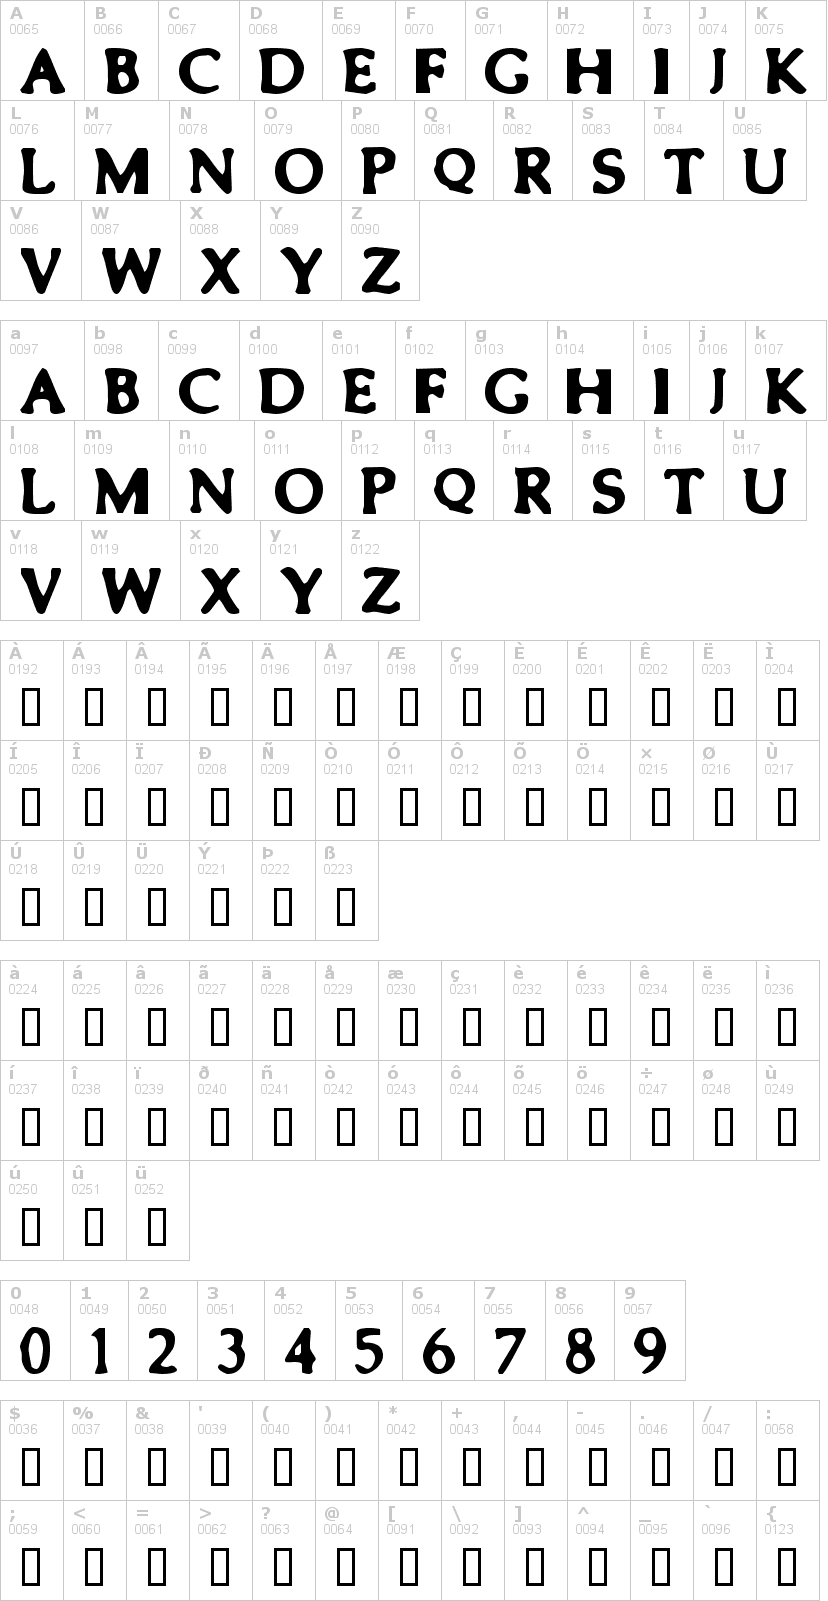 Lettere dell'alfabeto del font smeared con le quali è possibile realizzare adesivi prespaziati